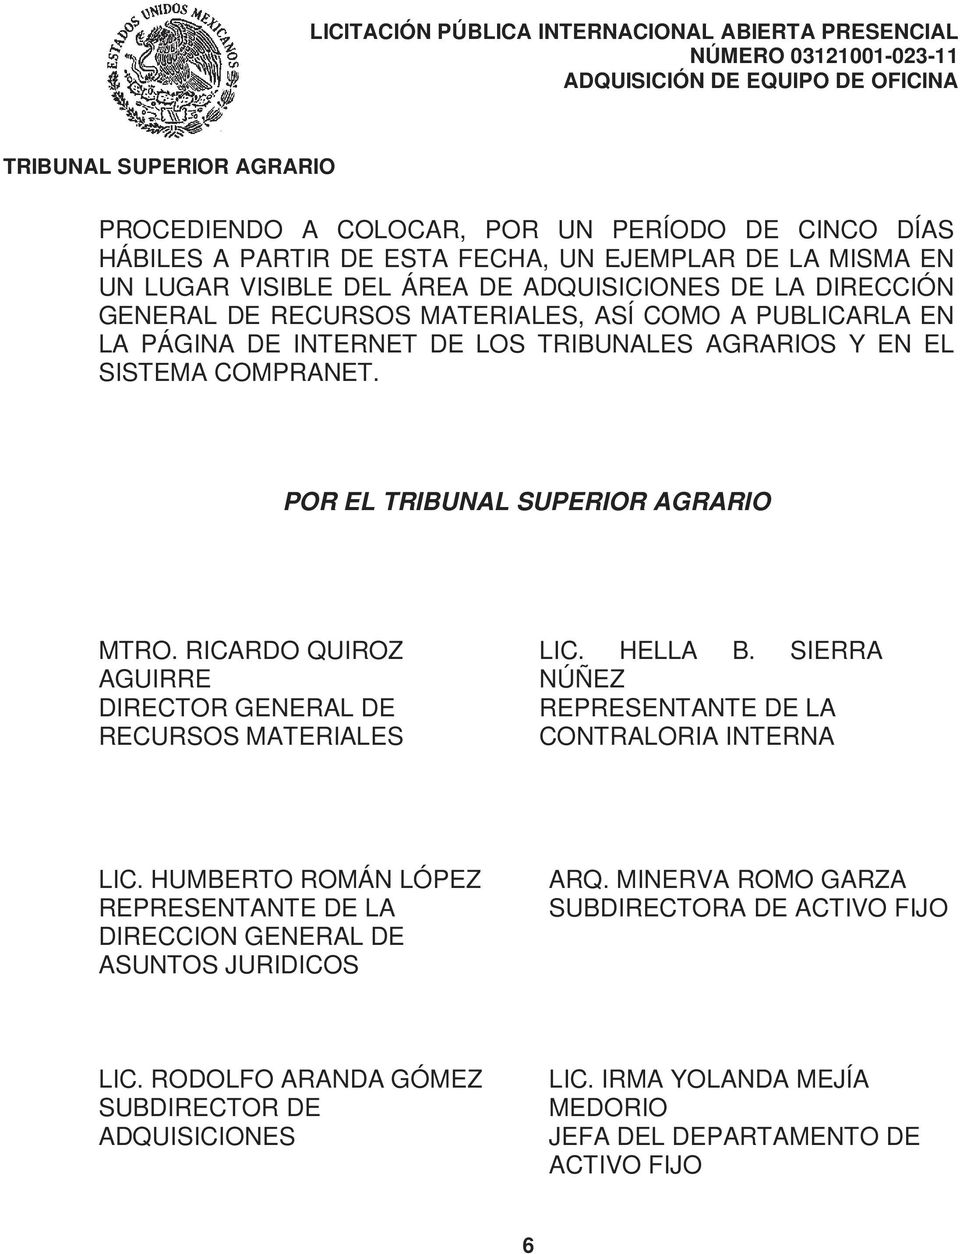 RICARDO QUIROZ AGUIRRE DIRECTOR GENERAL DE RECURSOS MATERIALES LIC. HELLA B. SIERRA NÚÑEZ REPRESENTANTE DE LA CONTRALORIA INTERNA LIC.